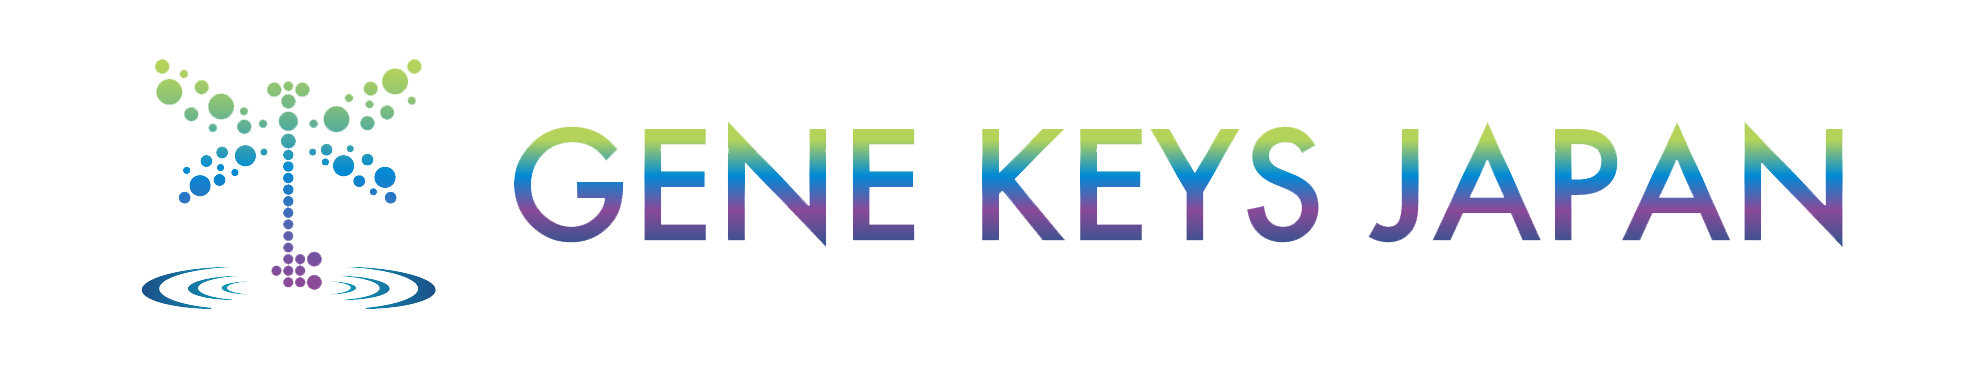 Gene Keys Japan